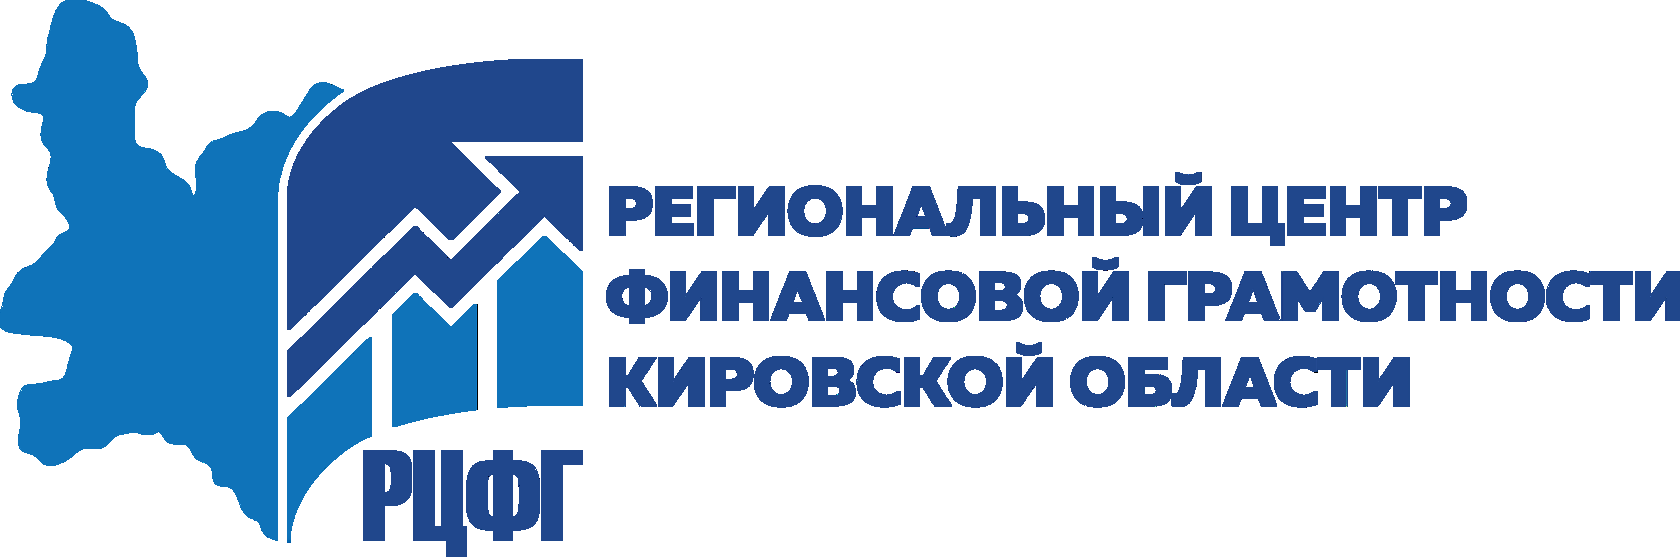 Министерство финансов Кировской области приглашает всех желающих принять участие в серии вебинаров по финансовой грамотности, проводимых в рамках Всероссийских просветительских эстафет «Мои финансы».